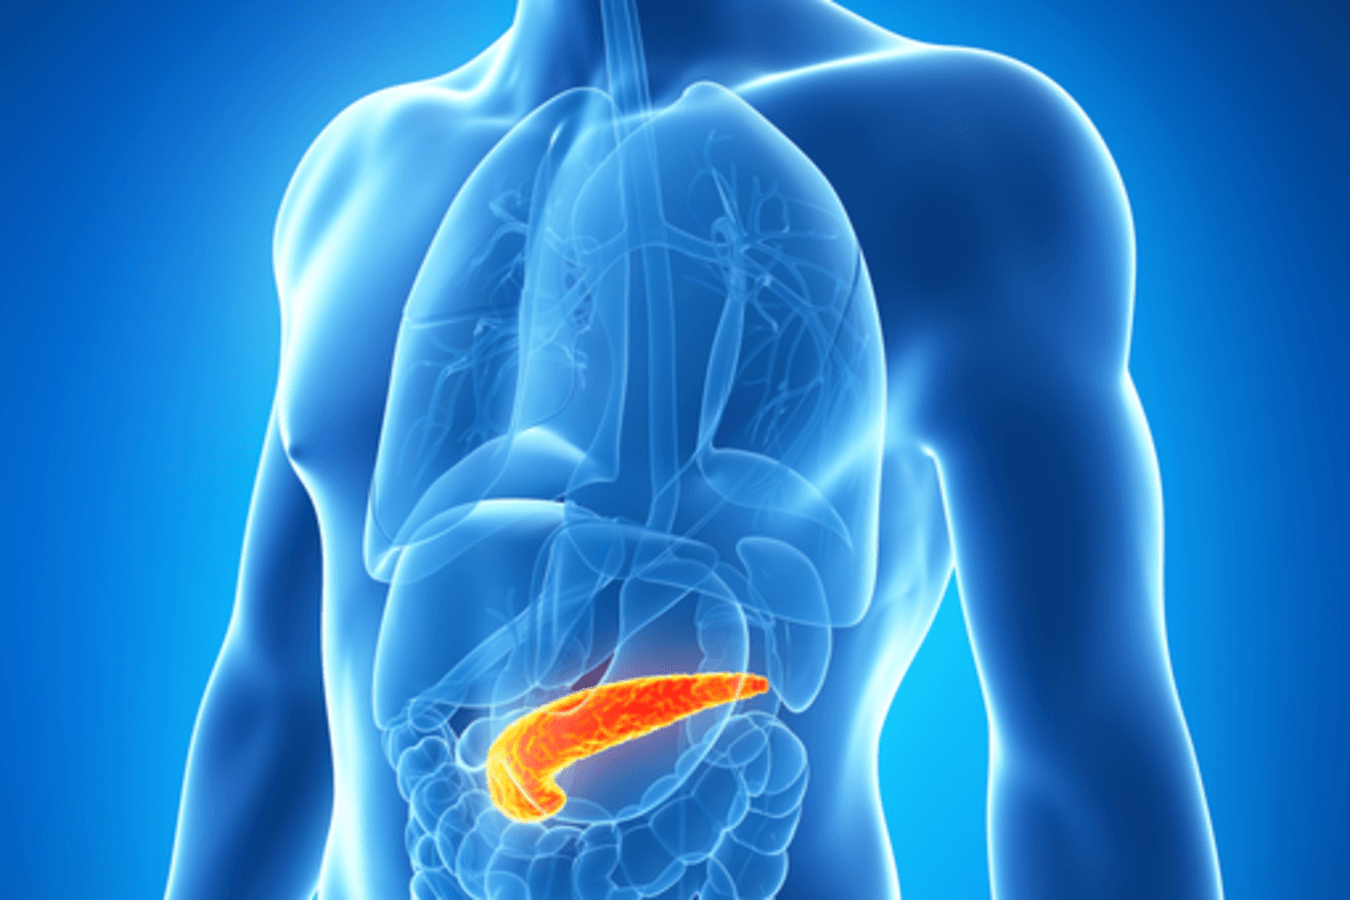 Incidencia de pancreatitis autoinmune en pacientes con diagnóstico de pancreatitis crónica idiopática